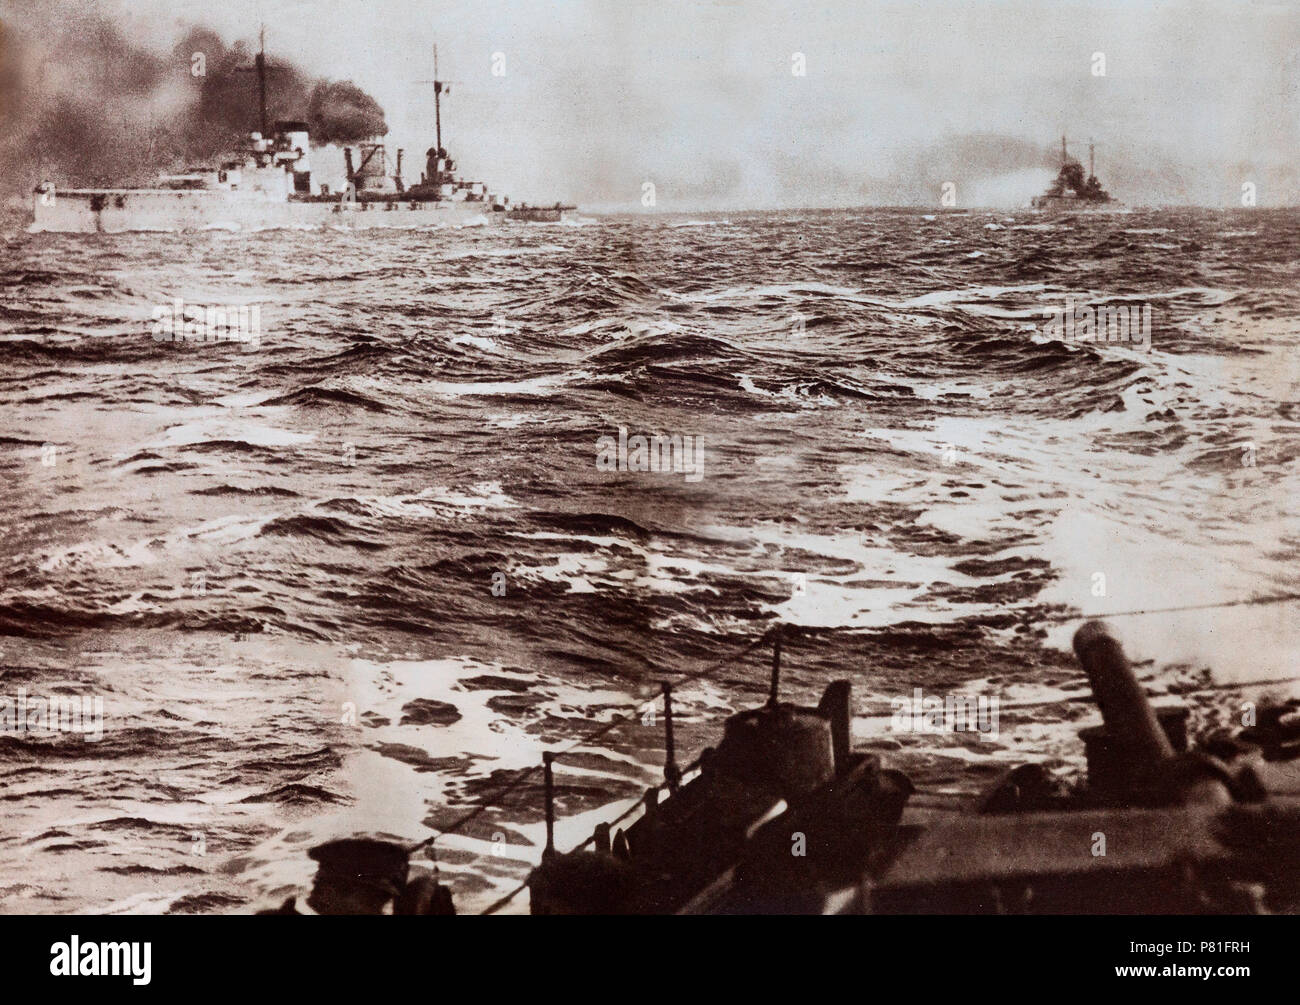 Der Hauptteil der deutschen Flotte aufgegeben und wurden in SCapa Flow in den Schottischen Orkney genommen. Die Hohe See Flotte war es unter den Bedingungen des Waffenstillstandes während Verhandlungen interniert vollzog sich über das Schicksal der Schiffe. In der Befürchtung, dass alle Schiffe beschlagnahmt und unter den alliierten Mächte aufgeteilt werden, der deutsche Kommandant, Admiral Ludwig von Reuter, beschlossen, die Flotte zu versenken am 21. Juni 1919. Dazwischen liegenden britischen guard Schiffe waren in der Lage, eine Zahl der Schiffe Strand, aber 52 der 74 internierten Schiffe sank. Stockfoto